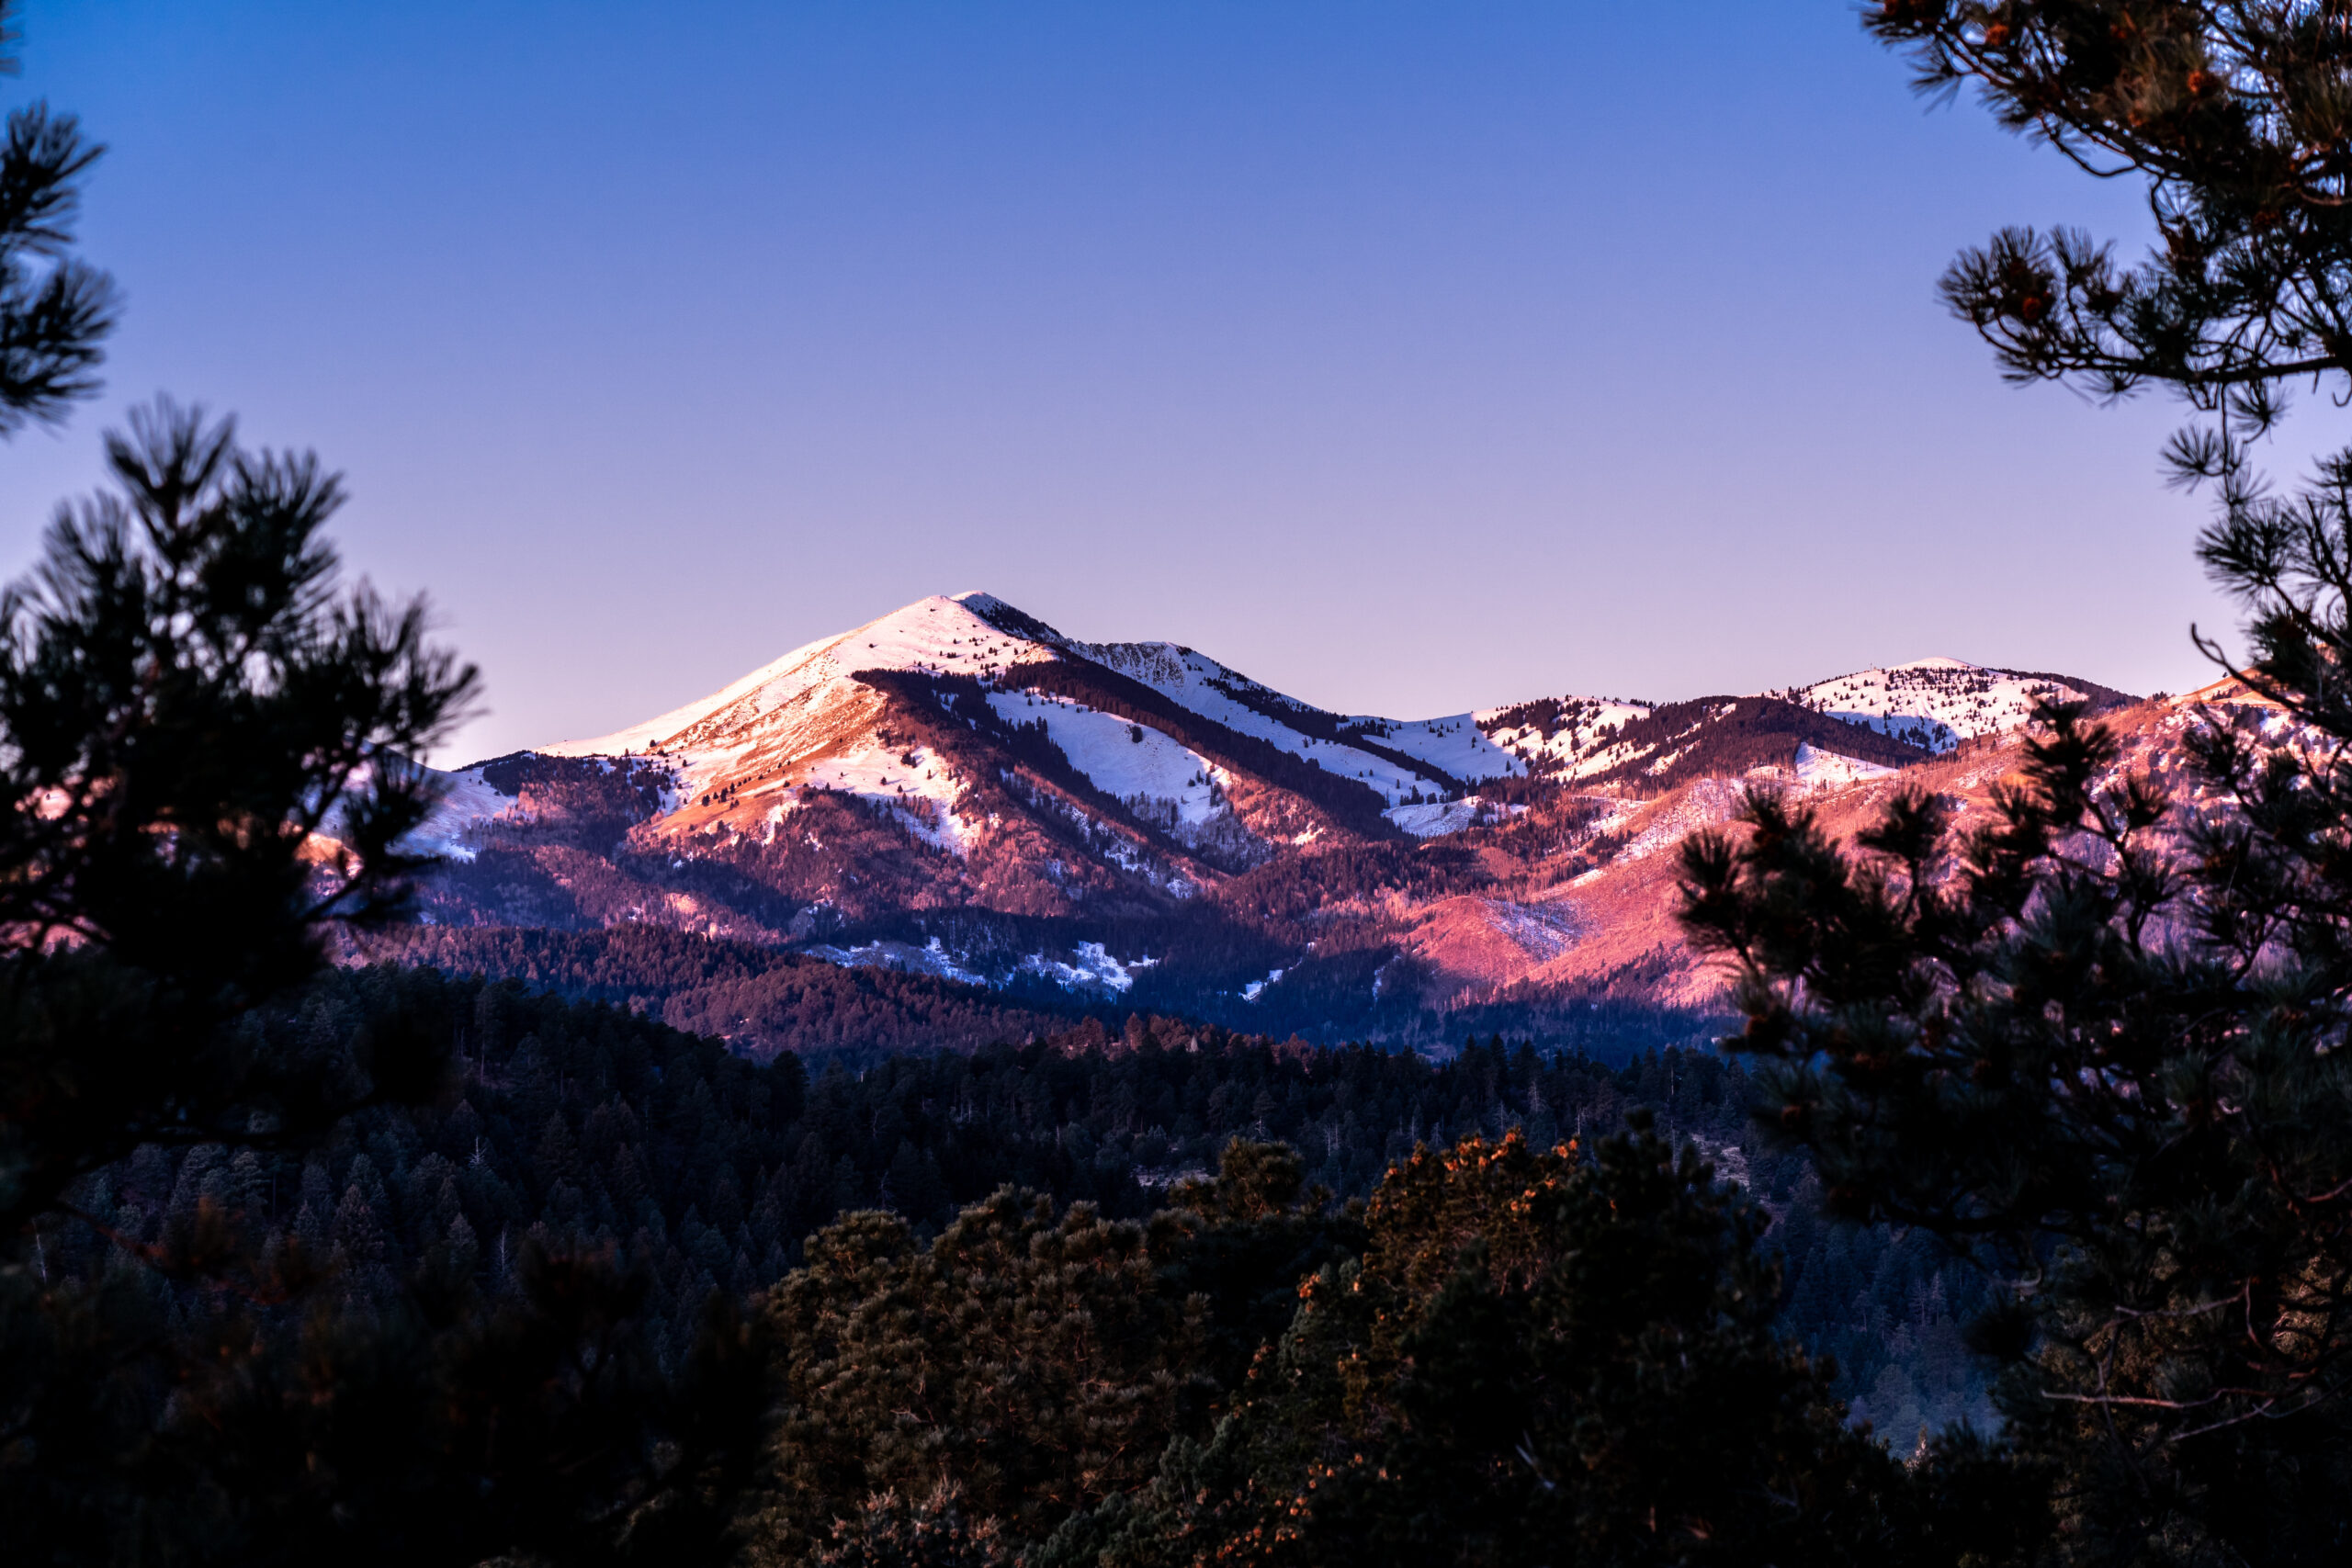 Sierra Blanca Peak at dawn